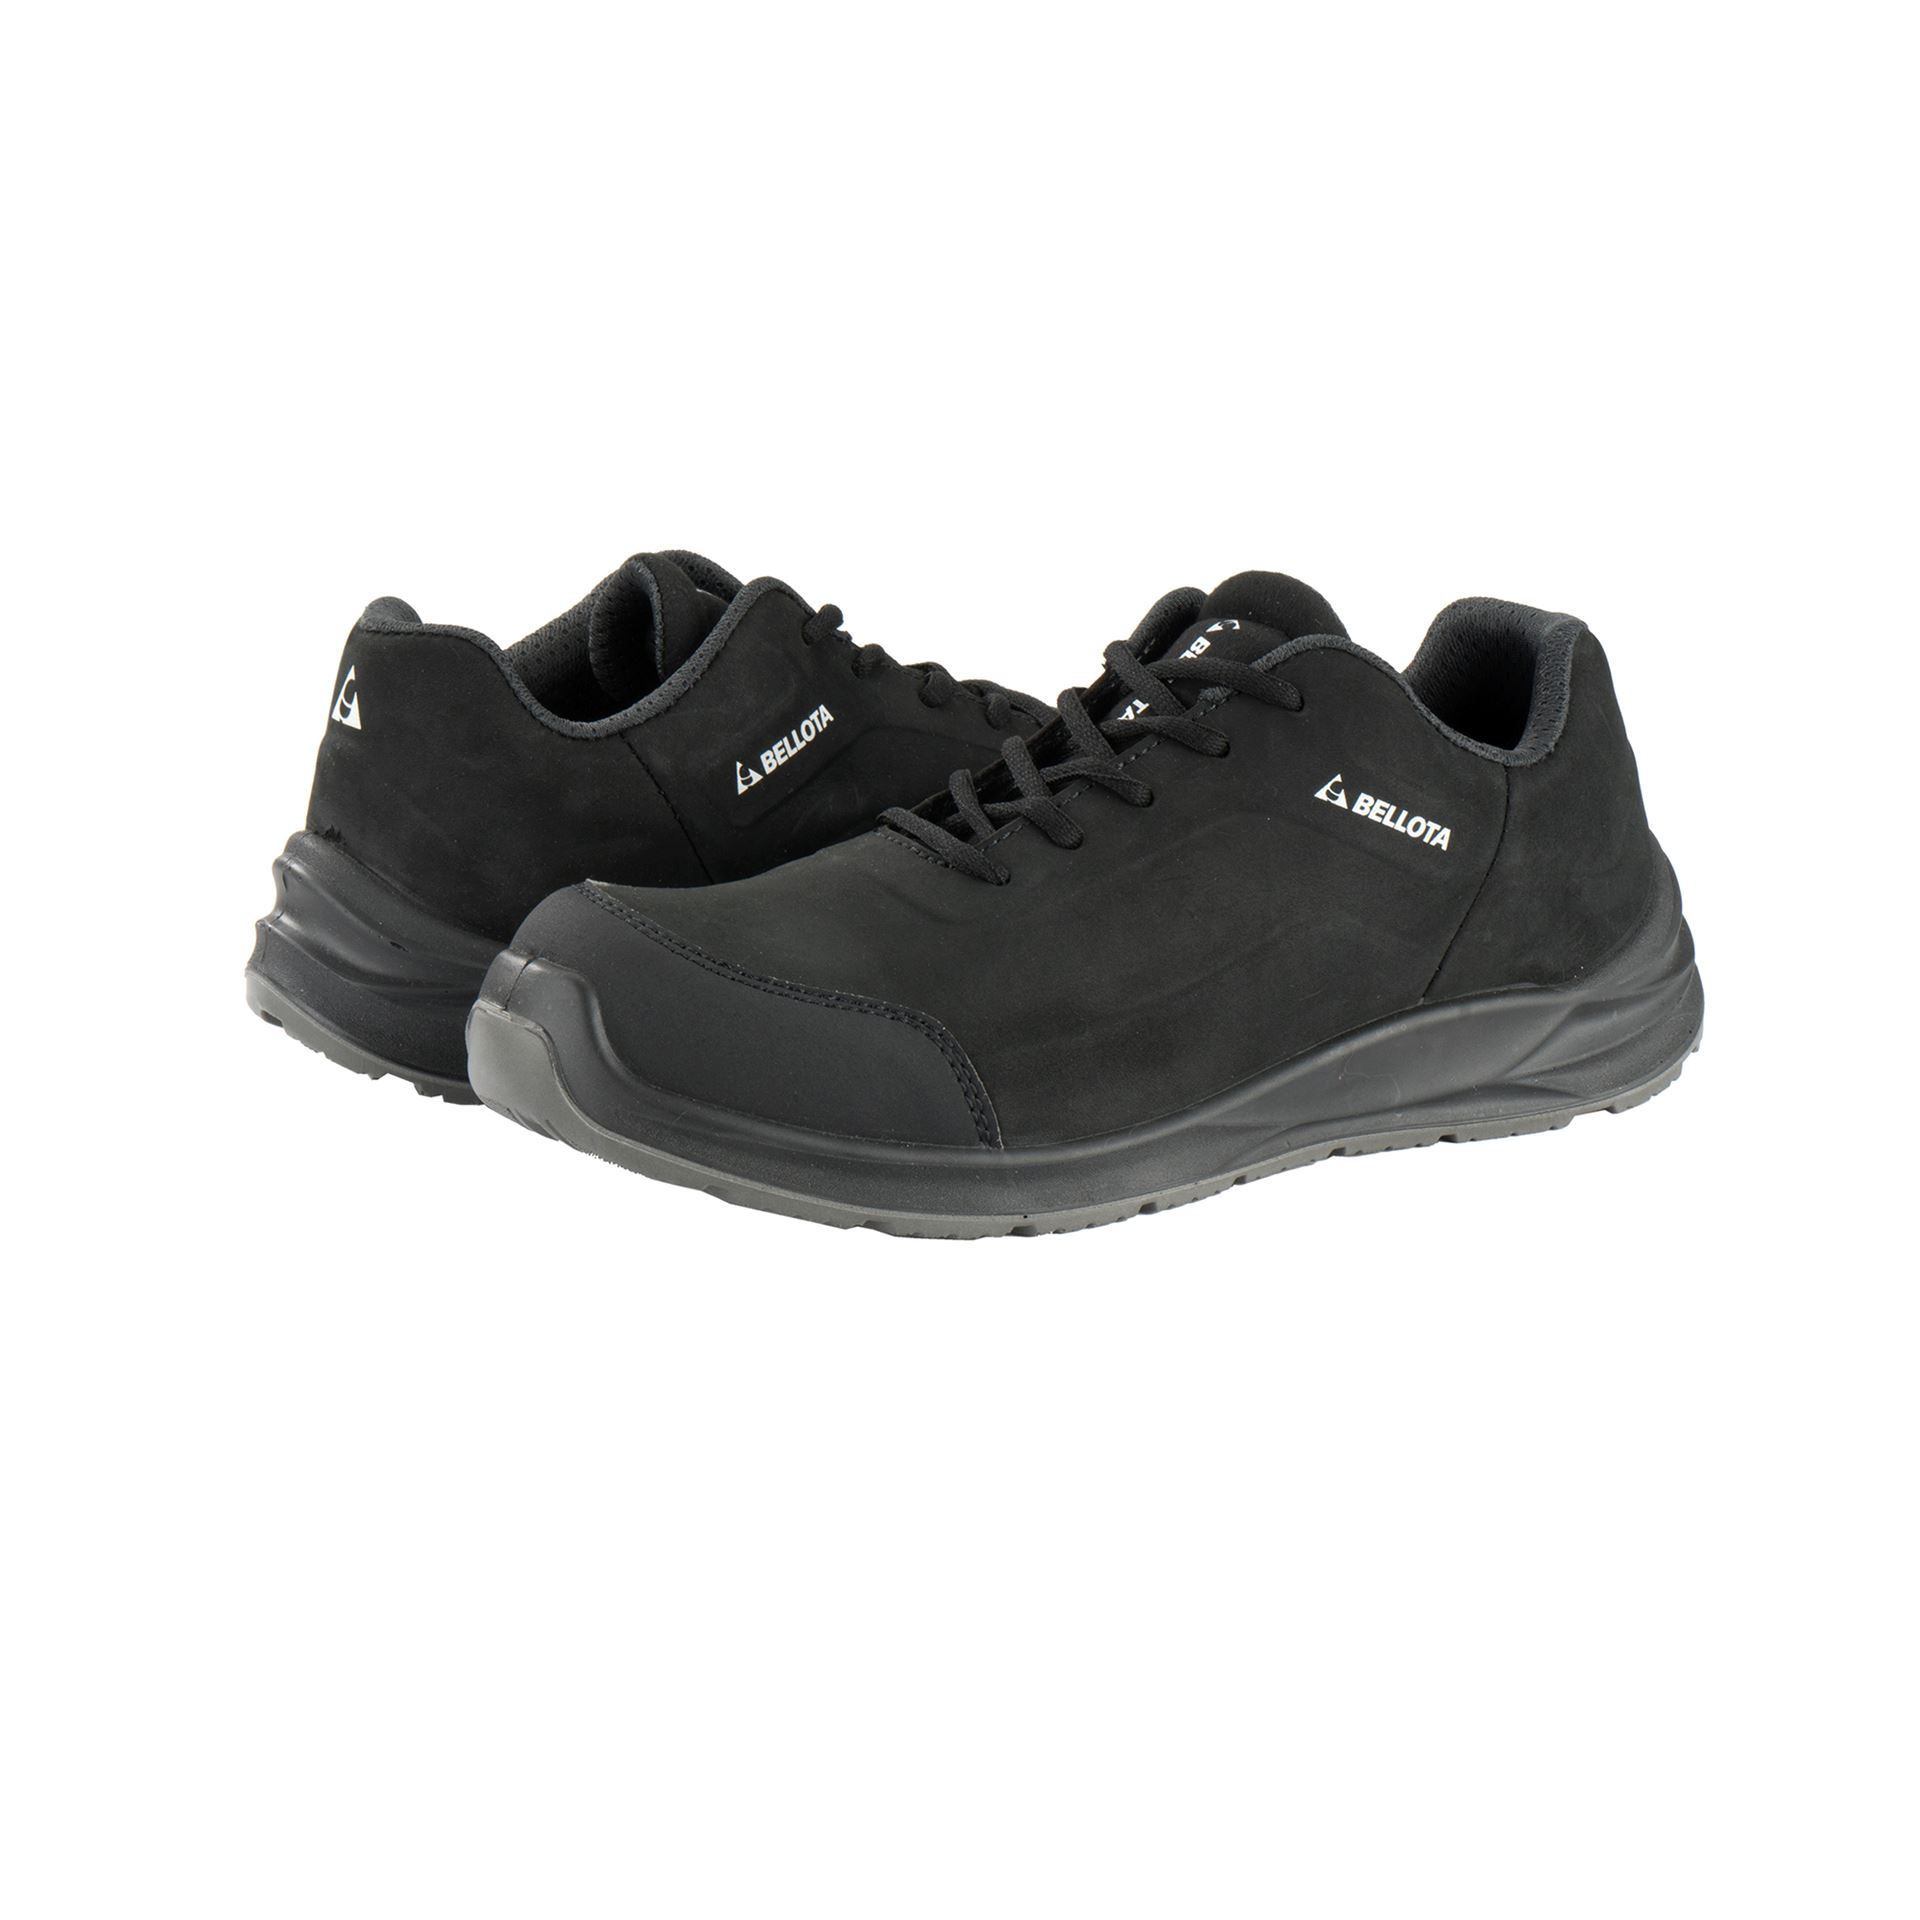 Ejercicio mañanero como resultado creativo Zapato seguridad S3 Bellota Flex Negro FTW03 - Suministros Urquiza